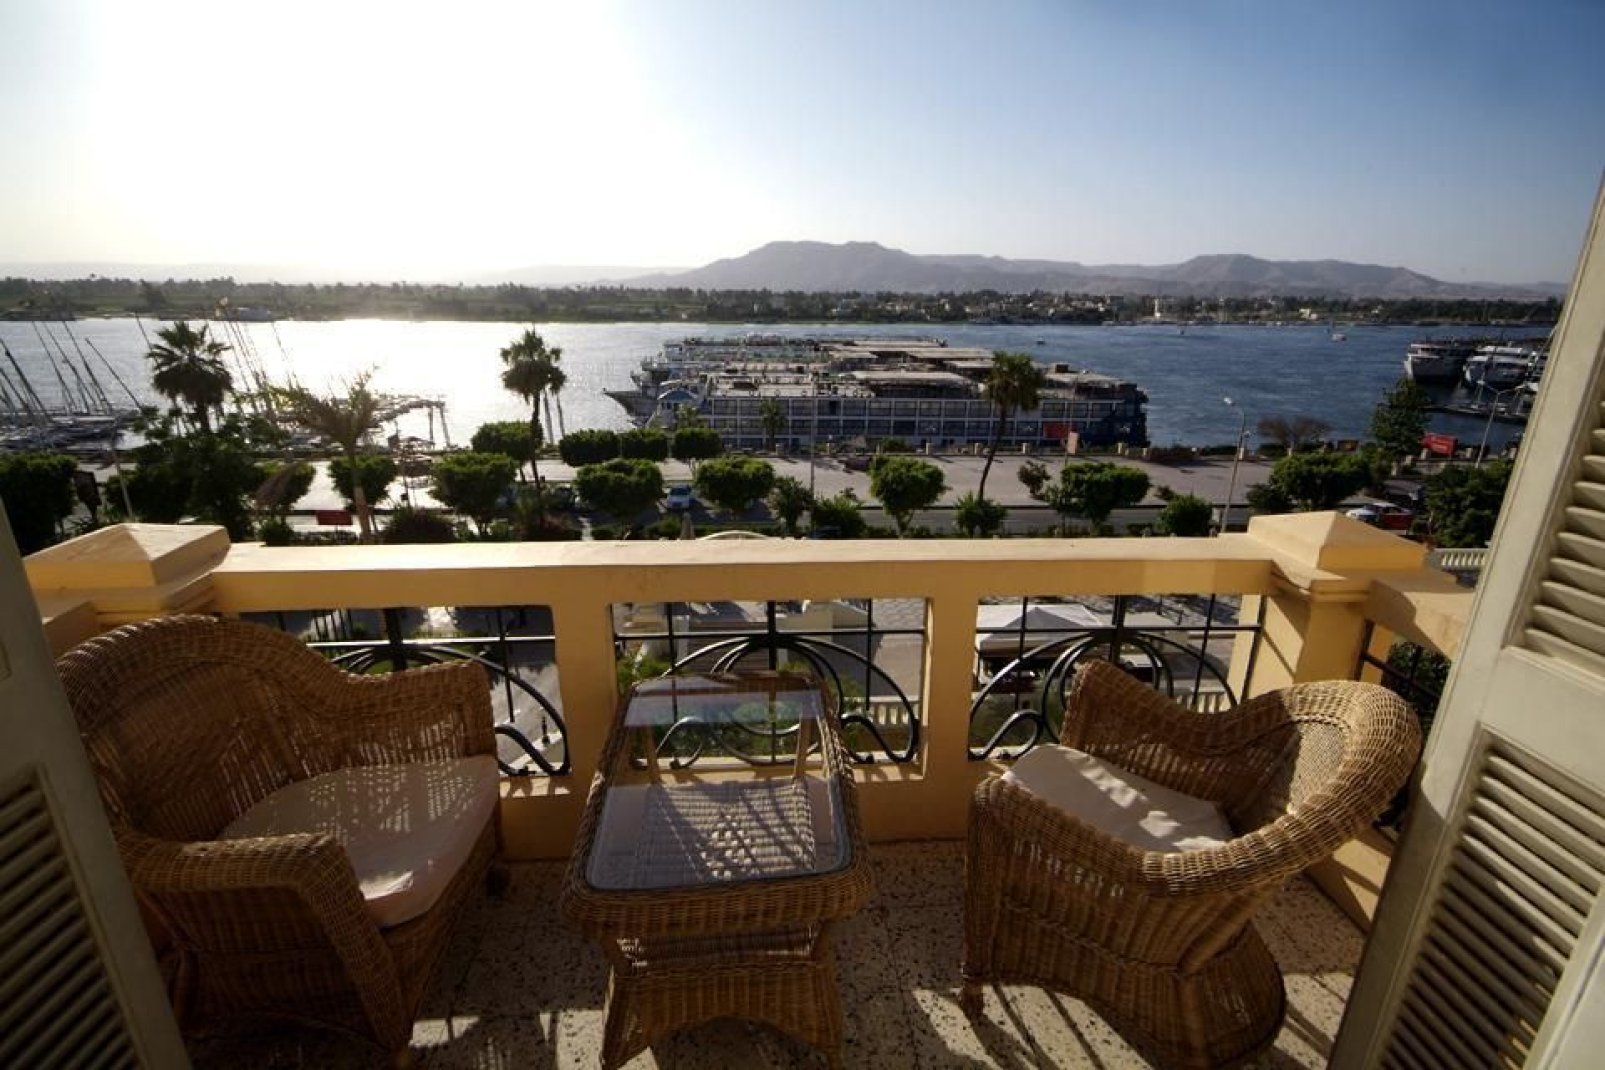 Luxor è stata costruita sulle rive del Nilo.